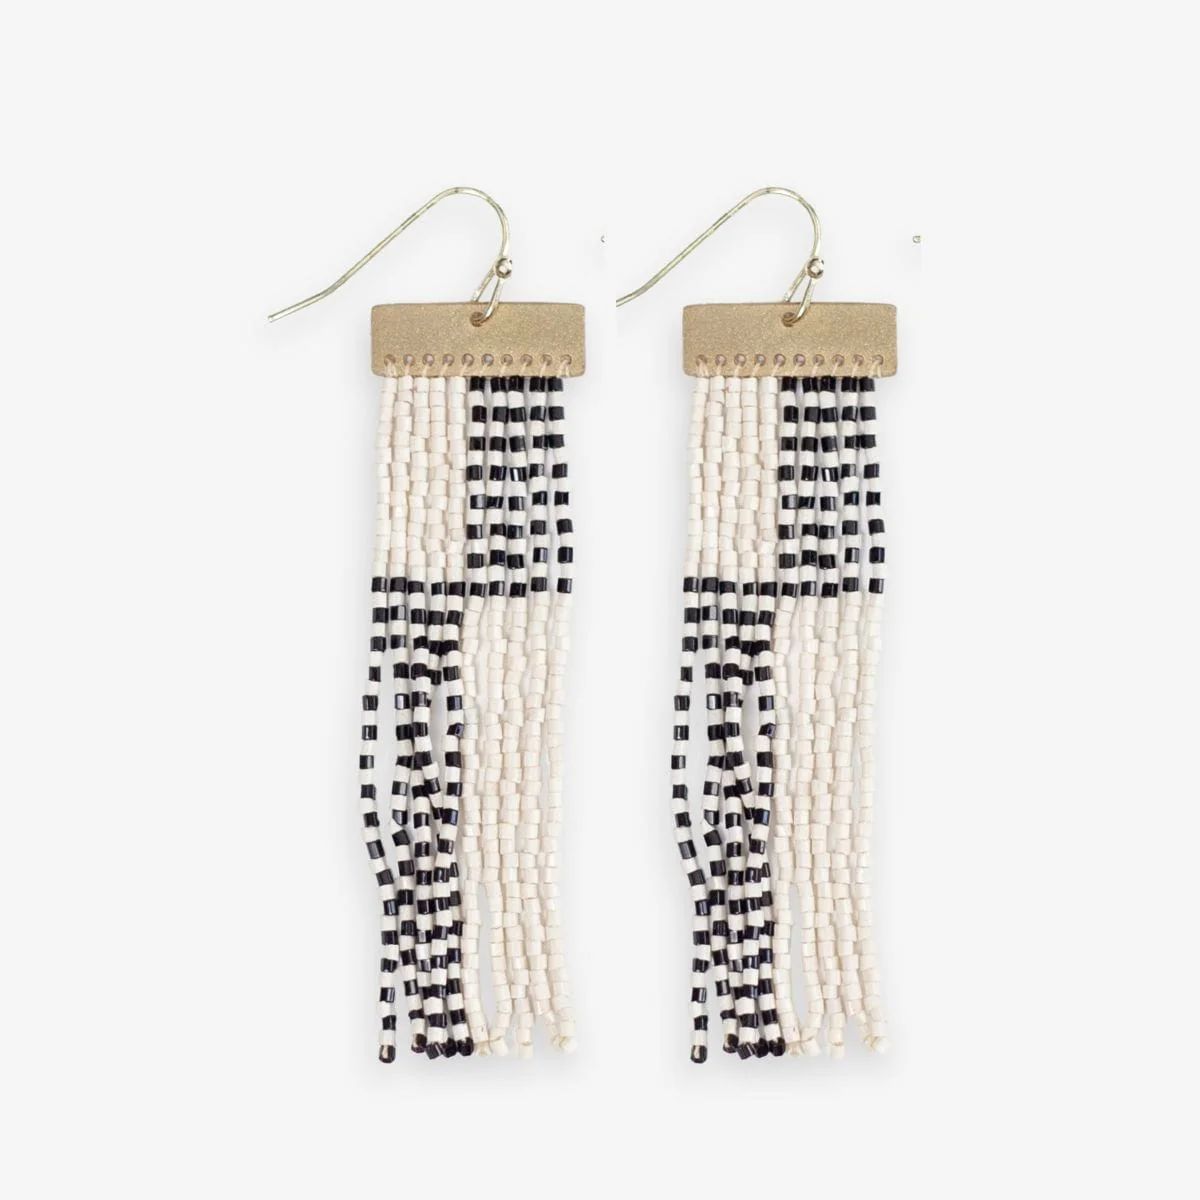 Lana Rectangle Hanger Colorblocks With Stripes Beaded Fringe Earrings Black/White | INK+ALLOY